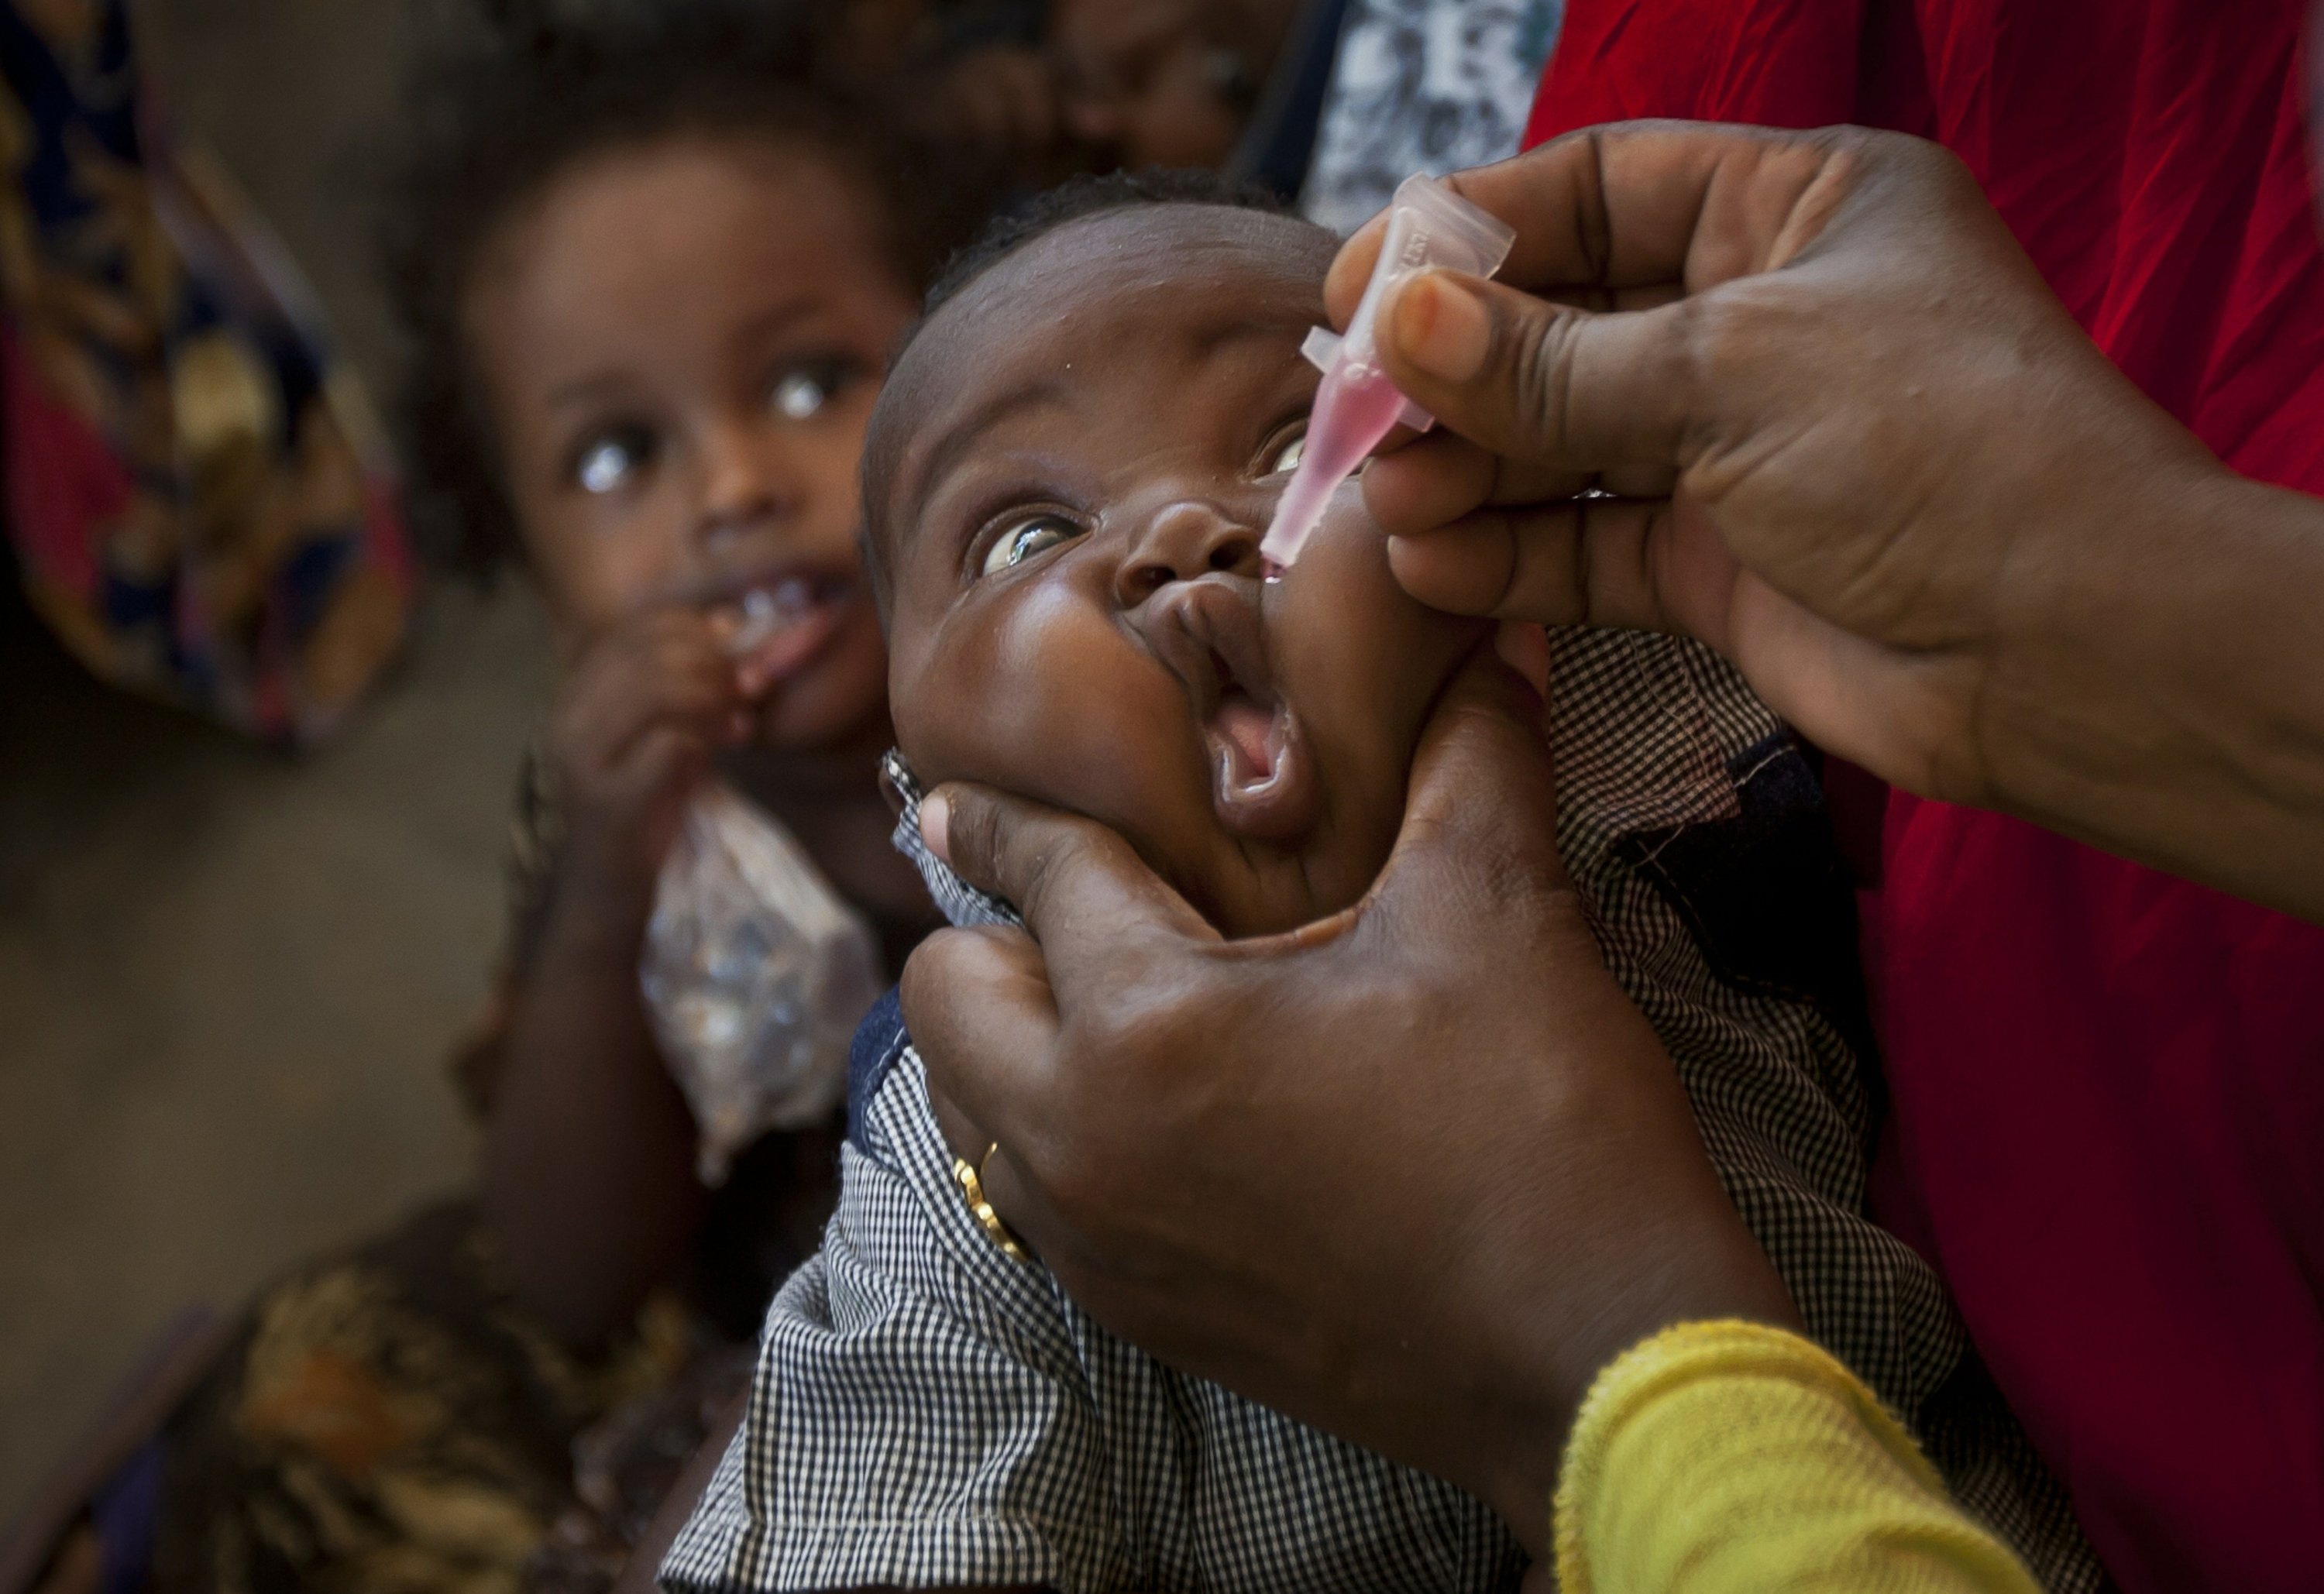 6.4 Million children immunised against polio